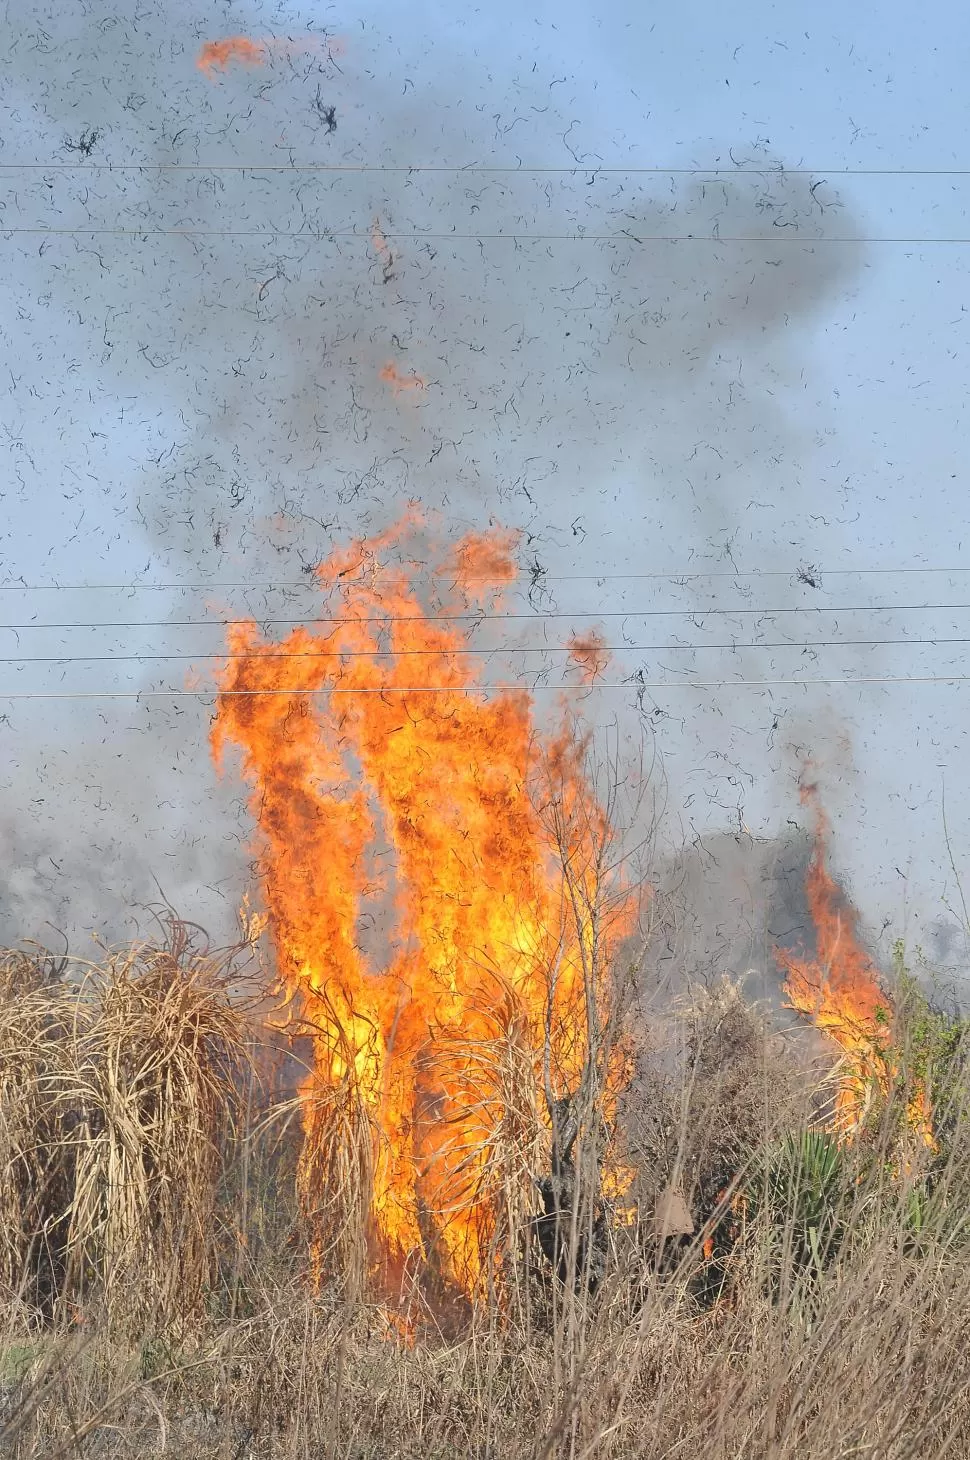 DATO. Este año el fuego en campos tucumanos aumento por la sequía. la gaceta / foto de osvaldo ripoll